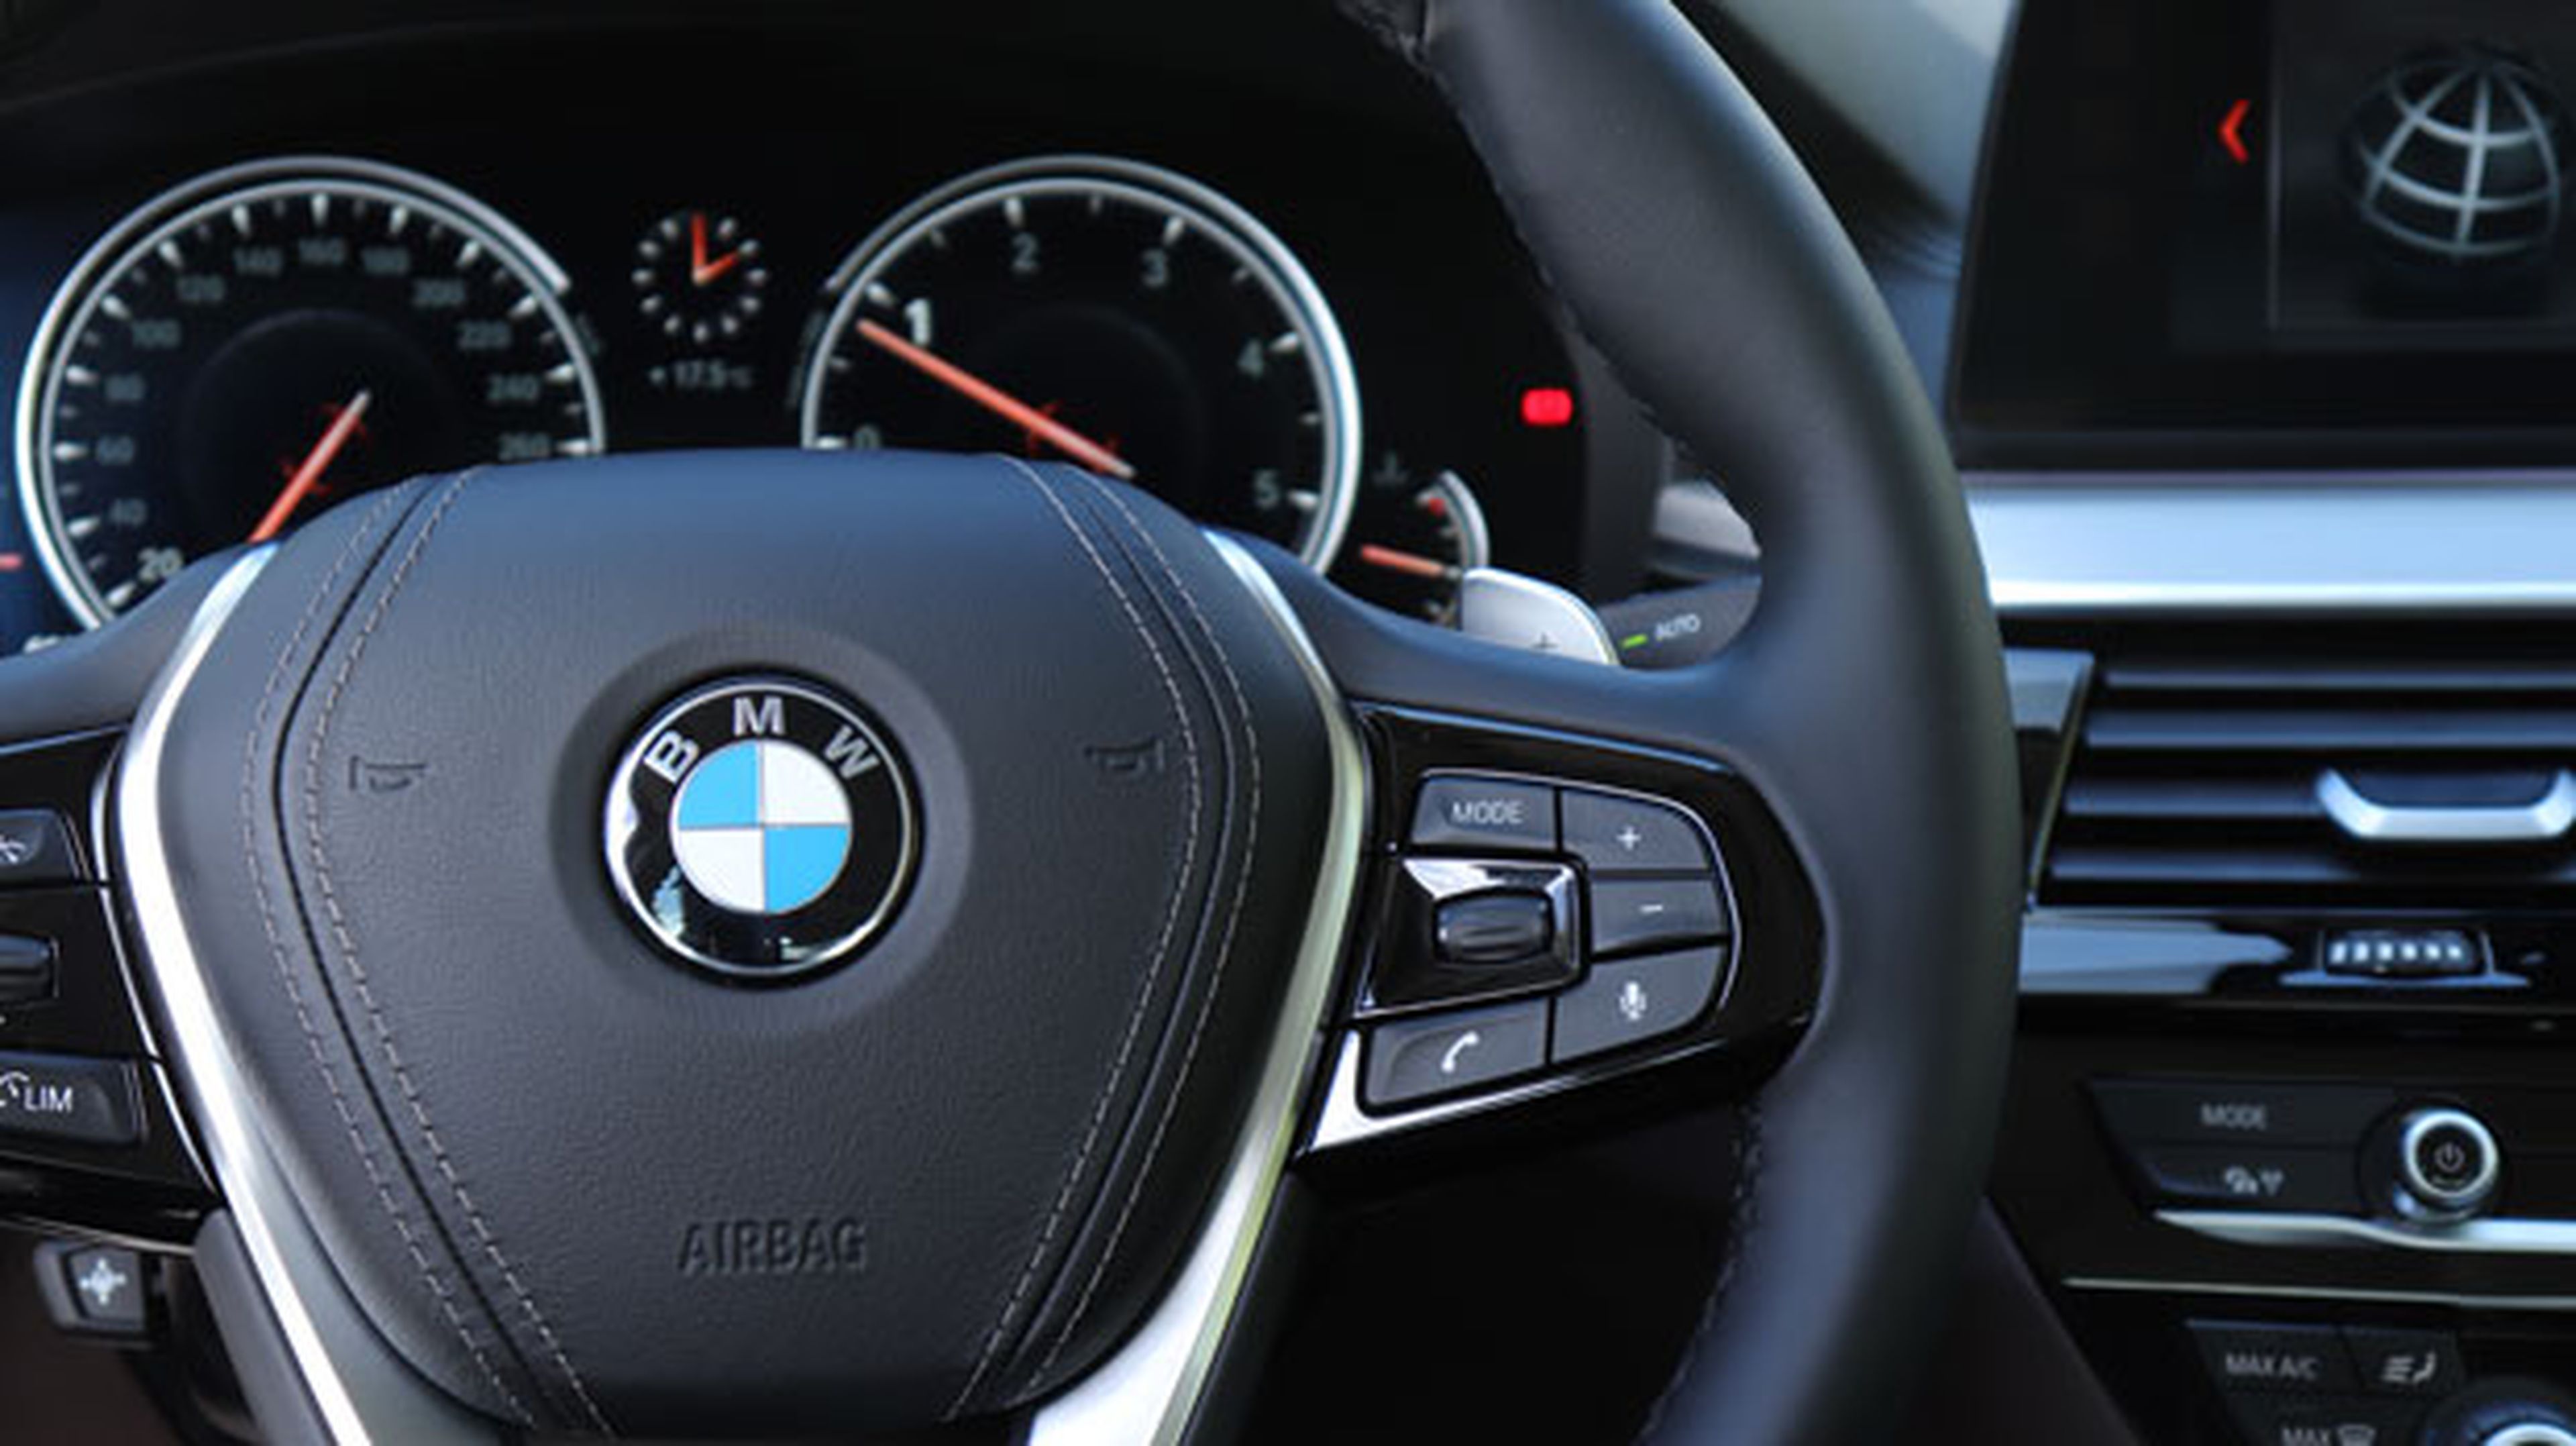 Nos subimos a bordo del BMW Serie 5 para analizar su tecnología